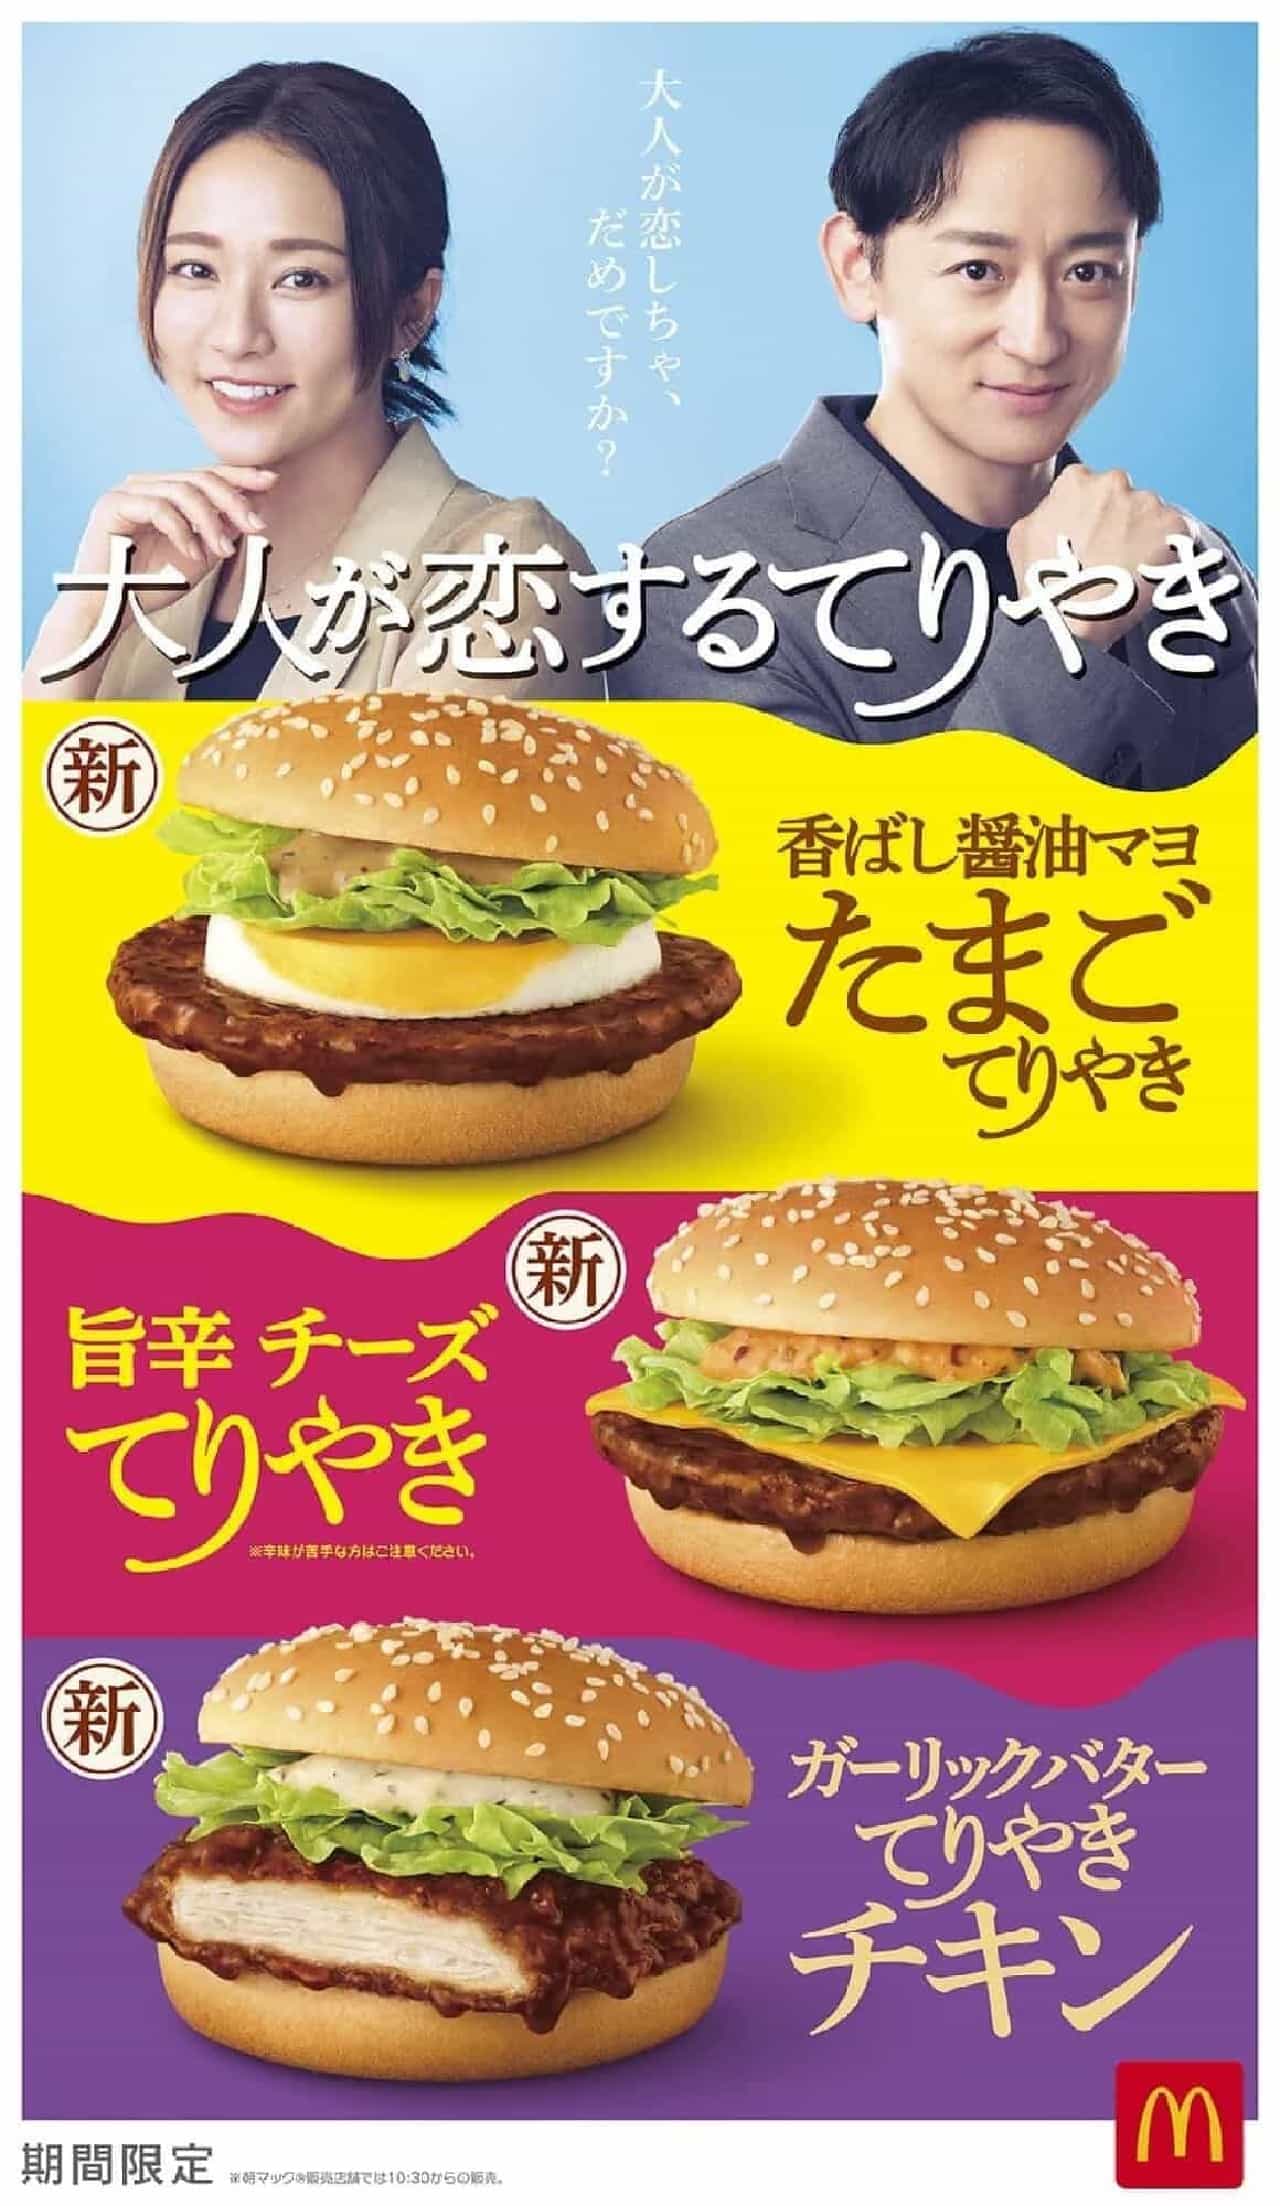 McDonald's "savory soy sauce mayo egg teriyaki".